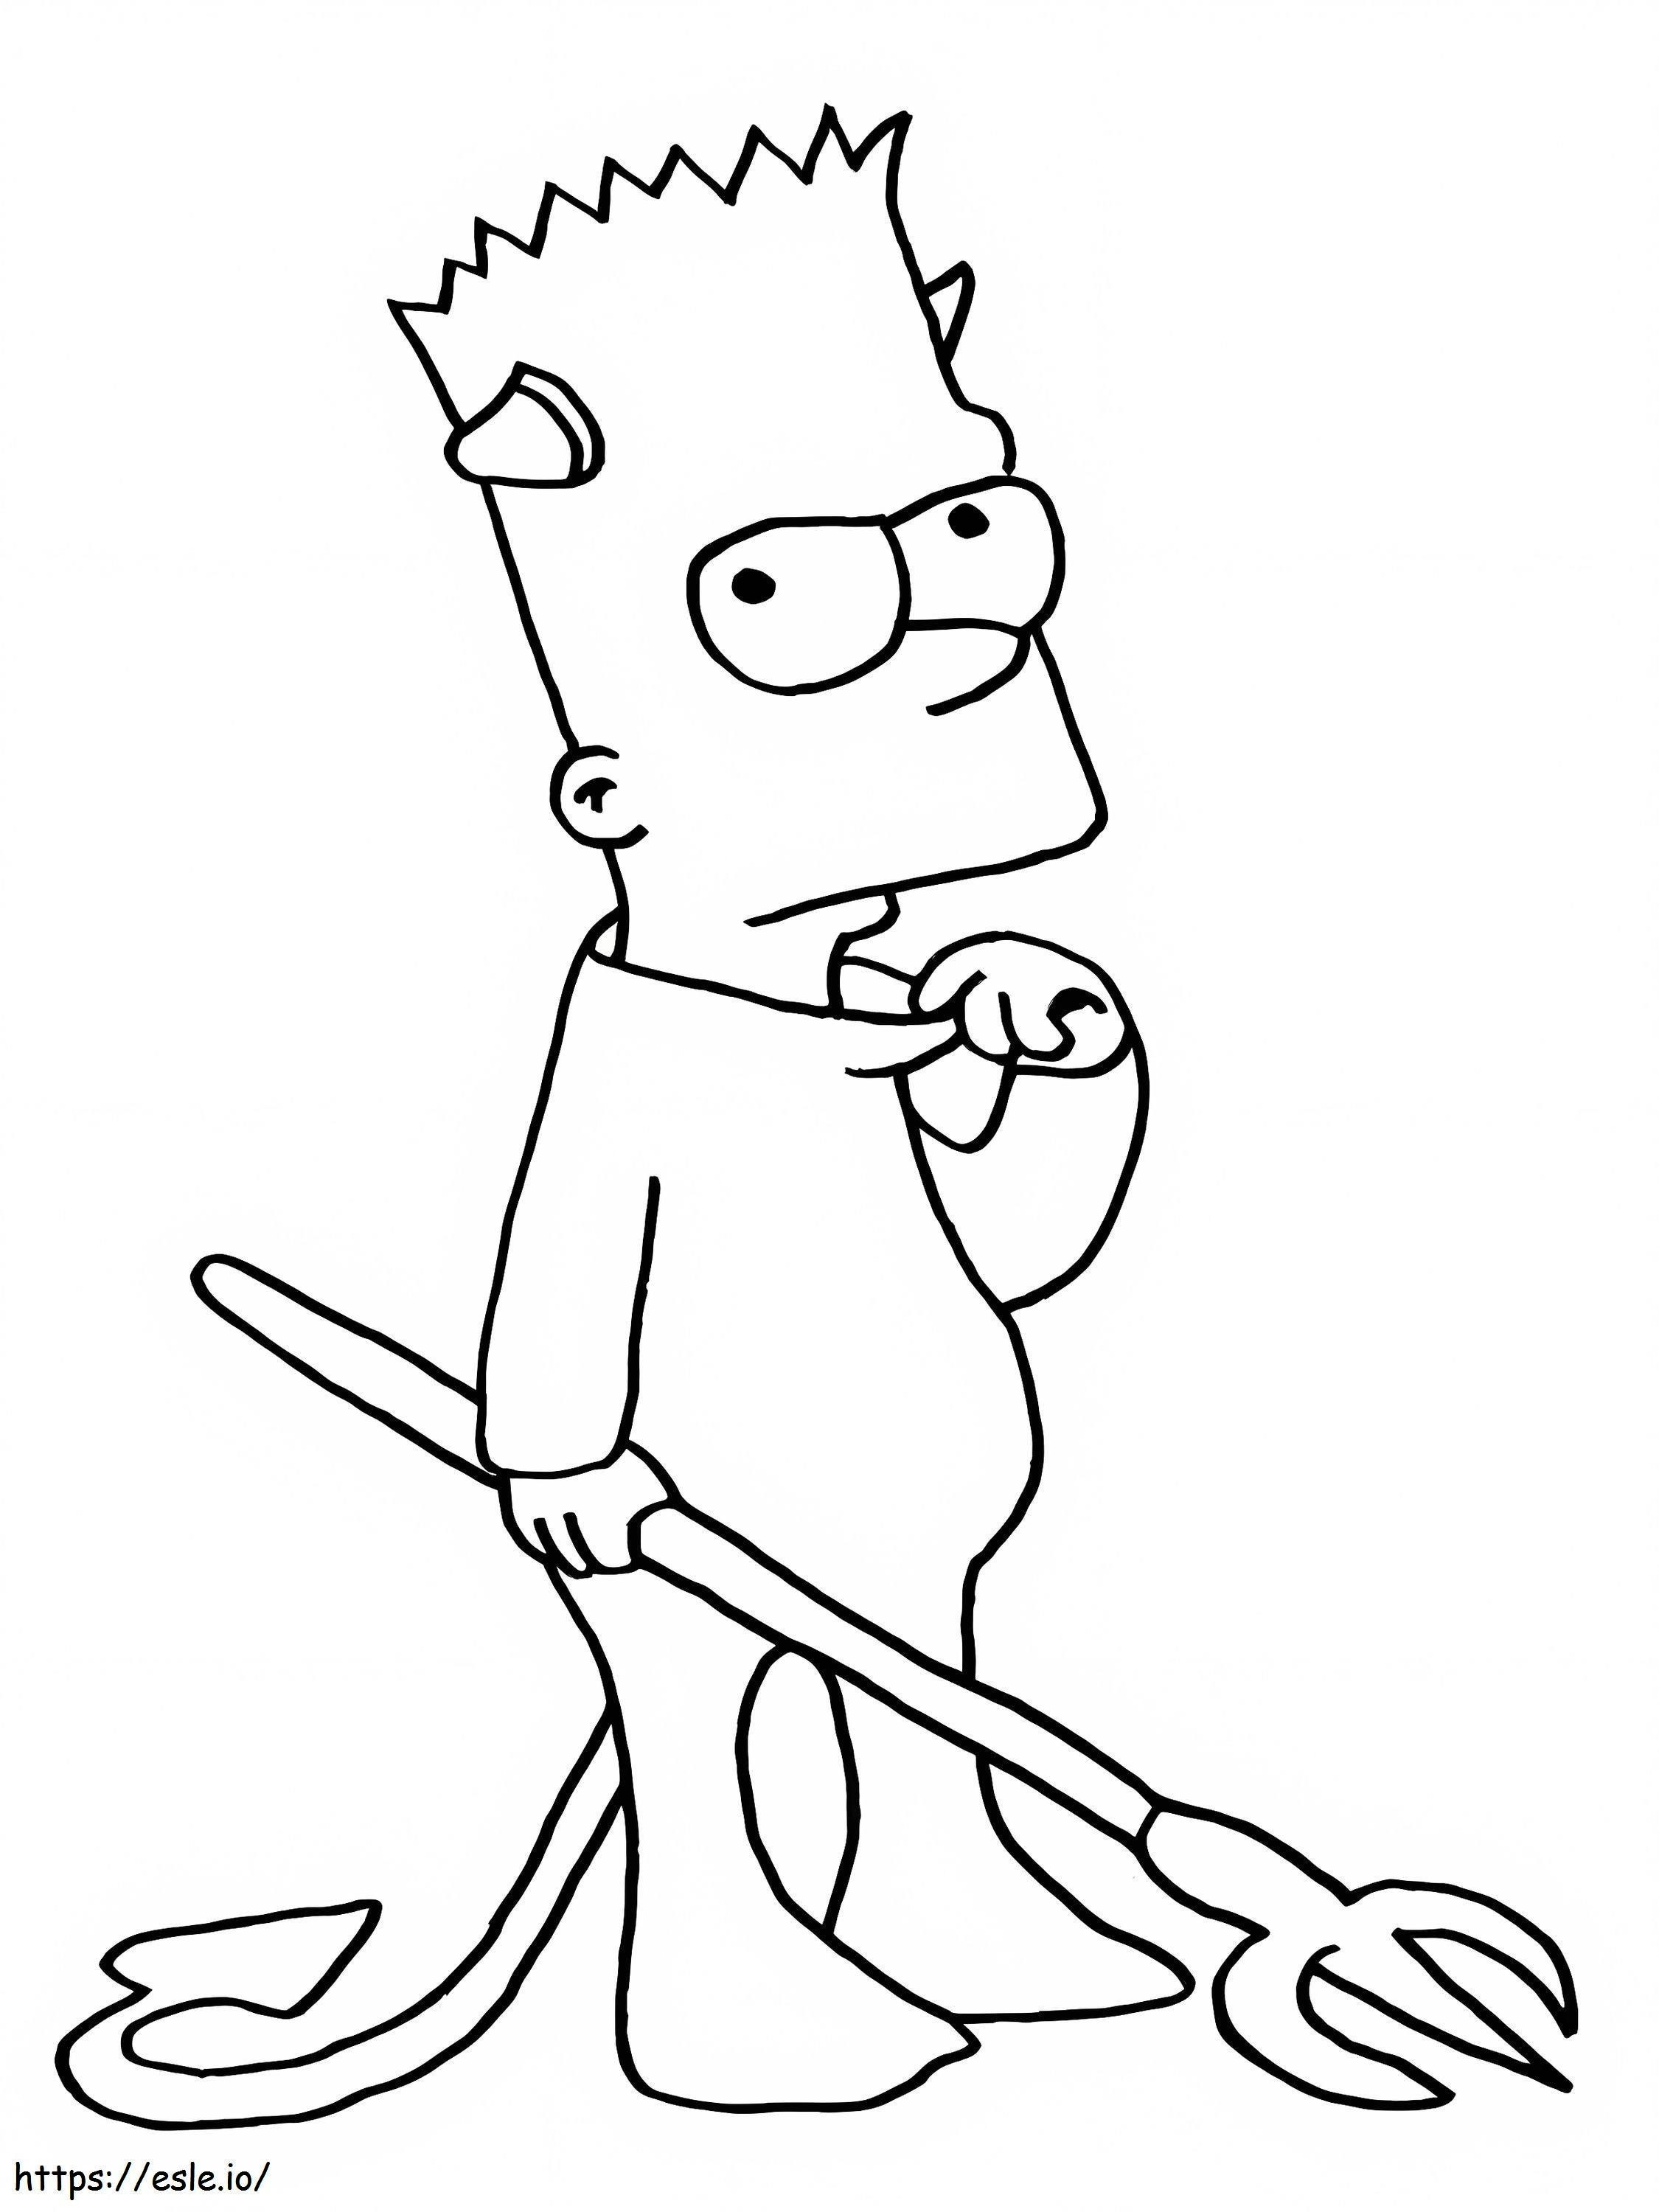 Diablo Bart Simpson coloring page